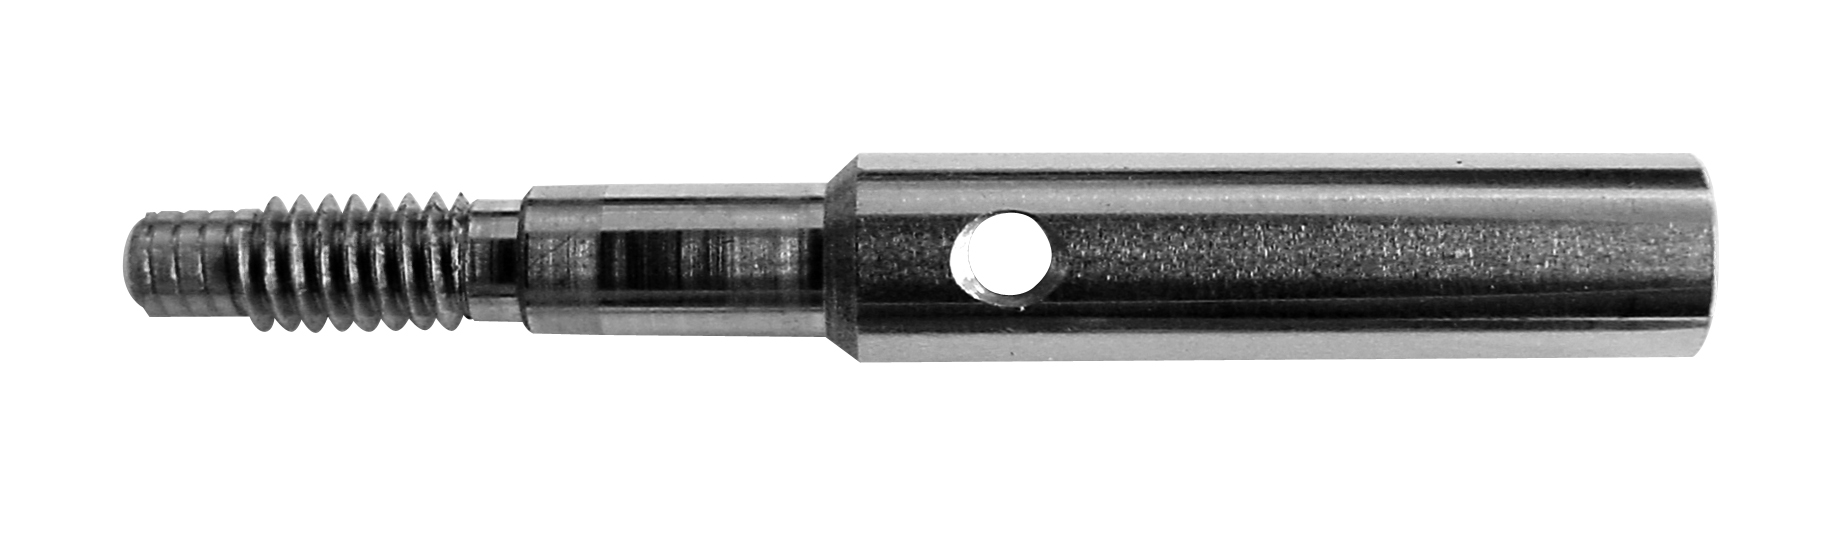 Zethamer inzetstuk cilindrisch Ø 4 mm